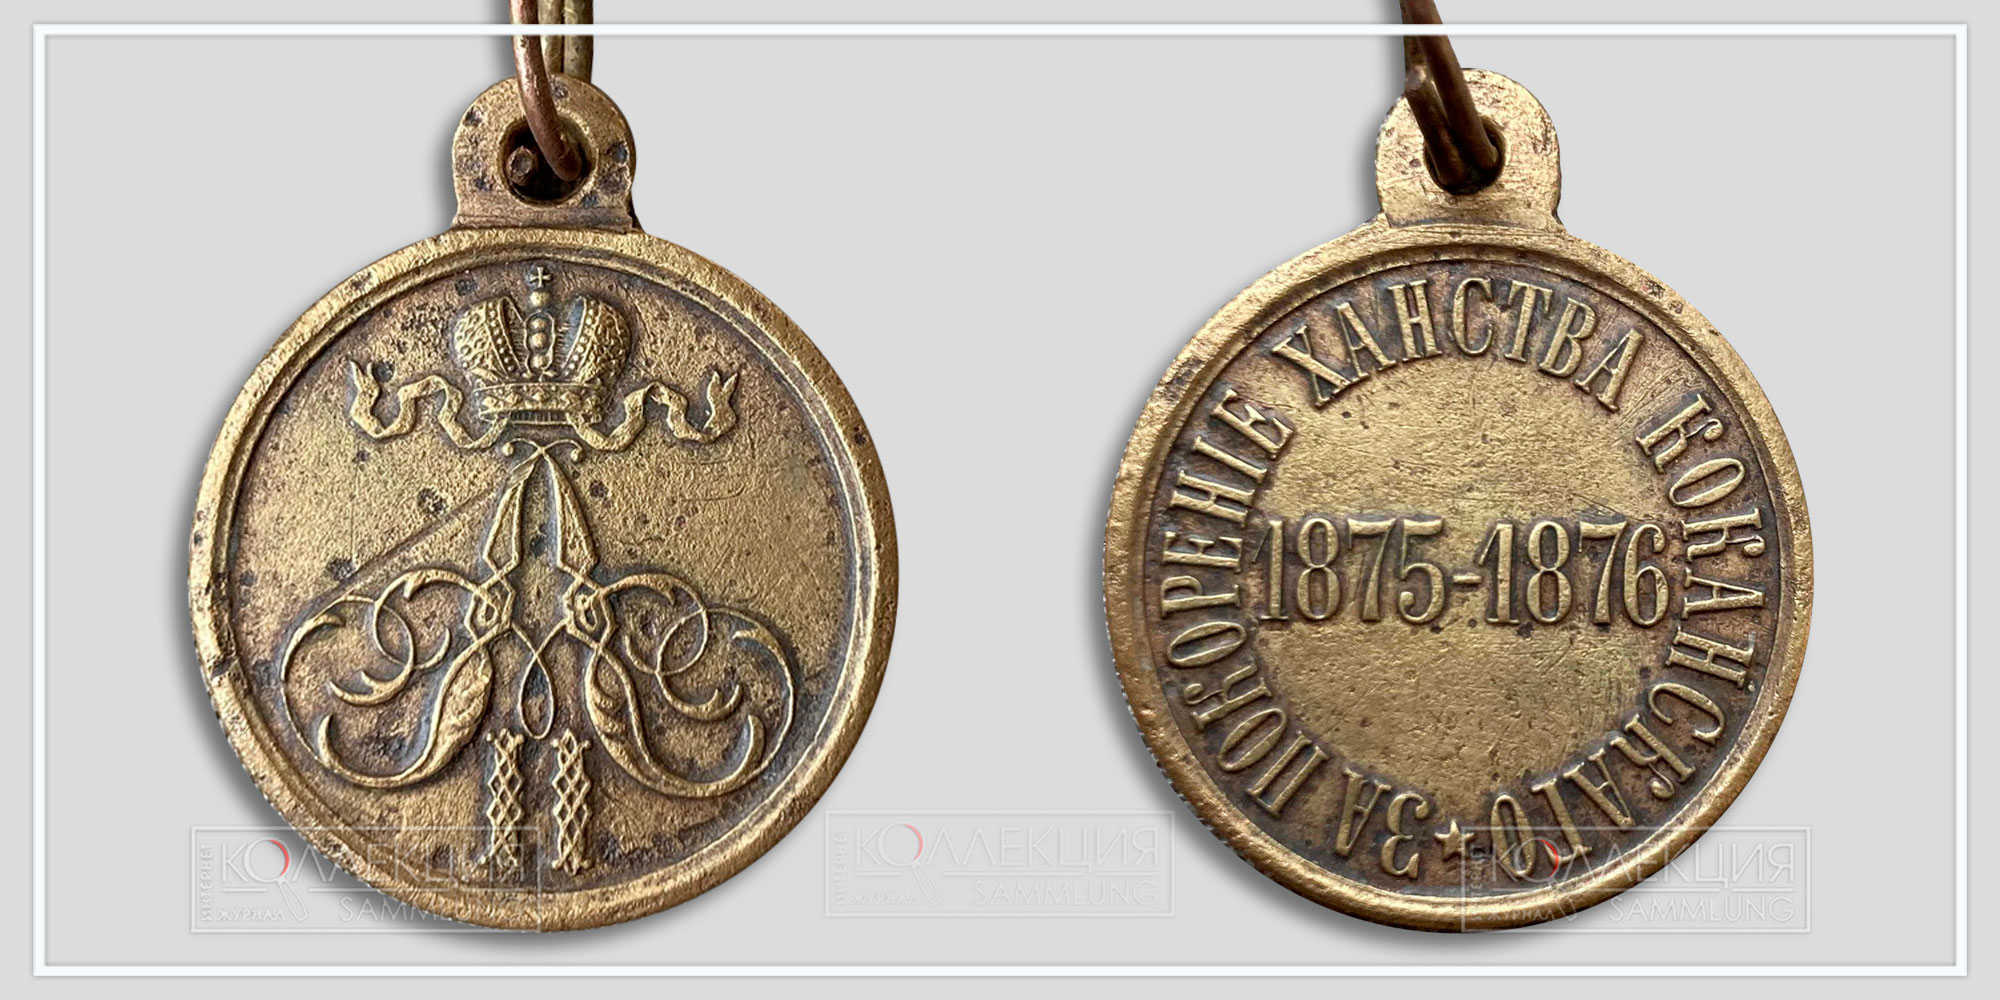 Медаль "За покорение ханства Кокандского" 1875-1876